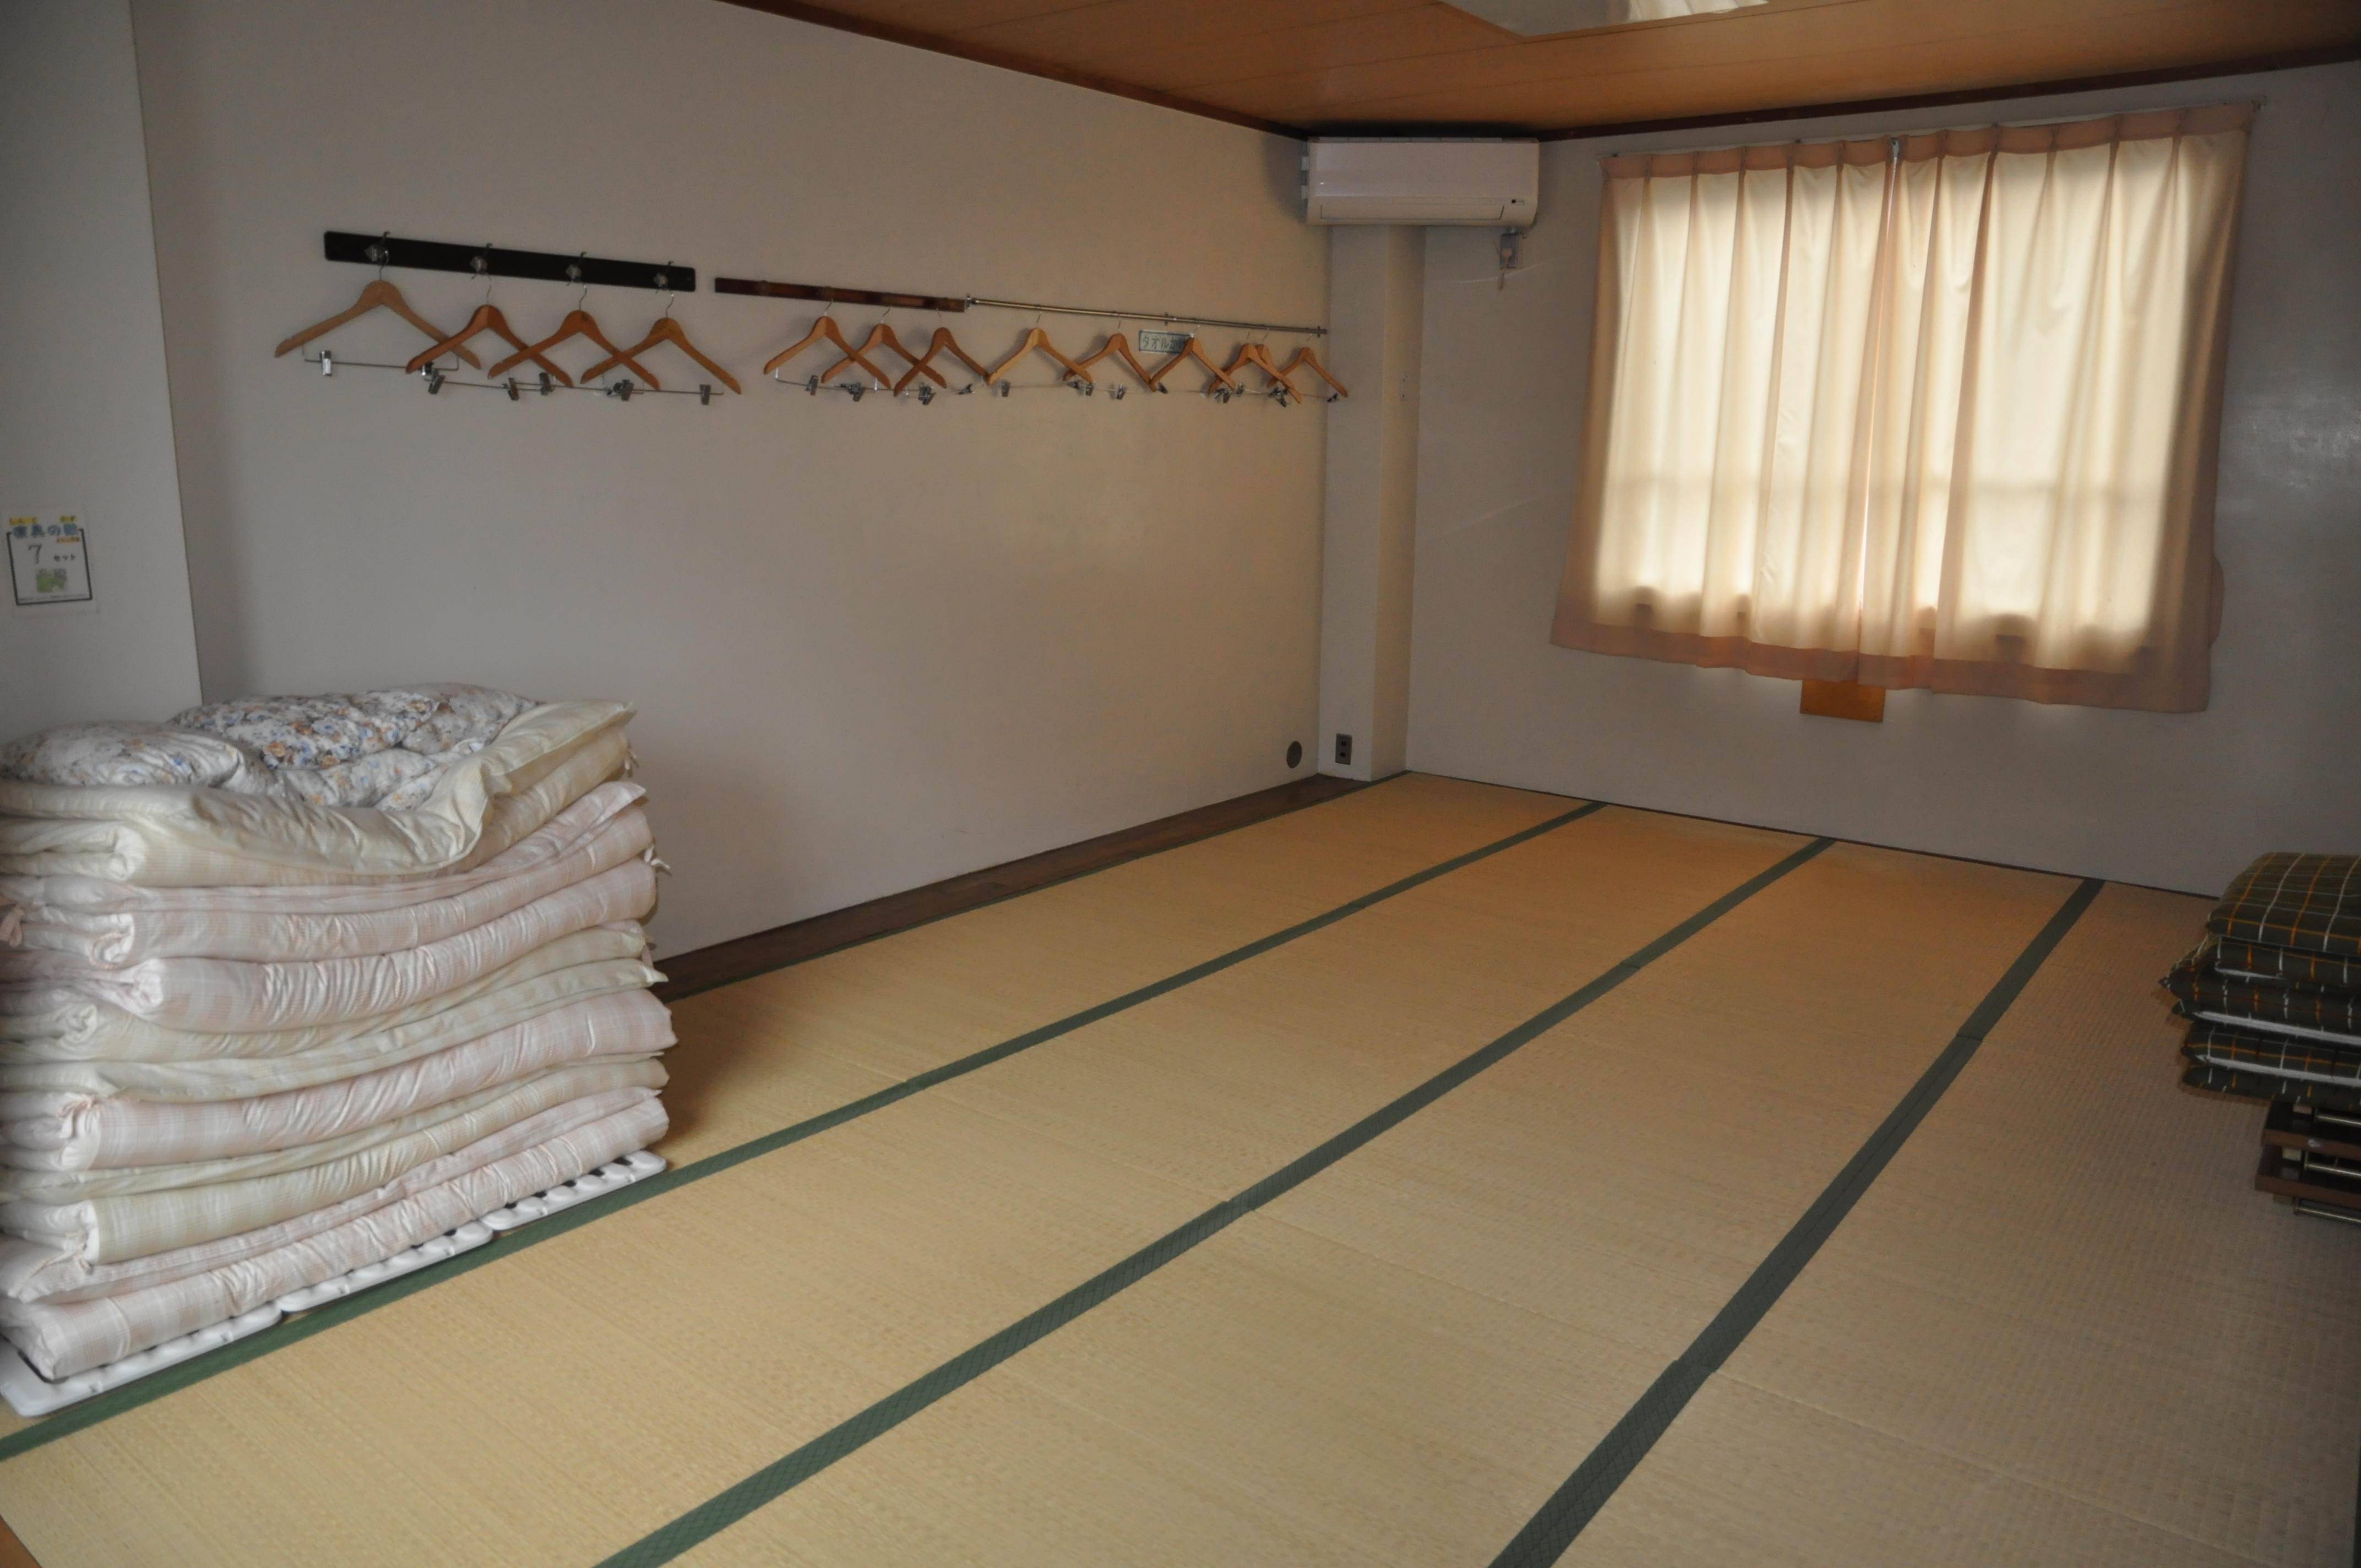 びわ湖青少年の家 +Active Biwako Center